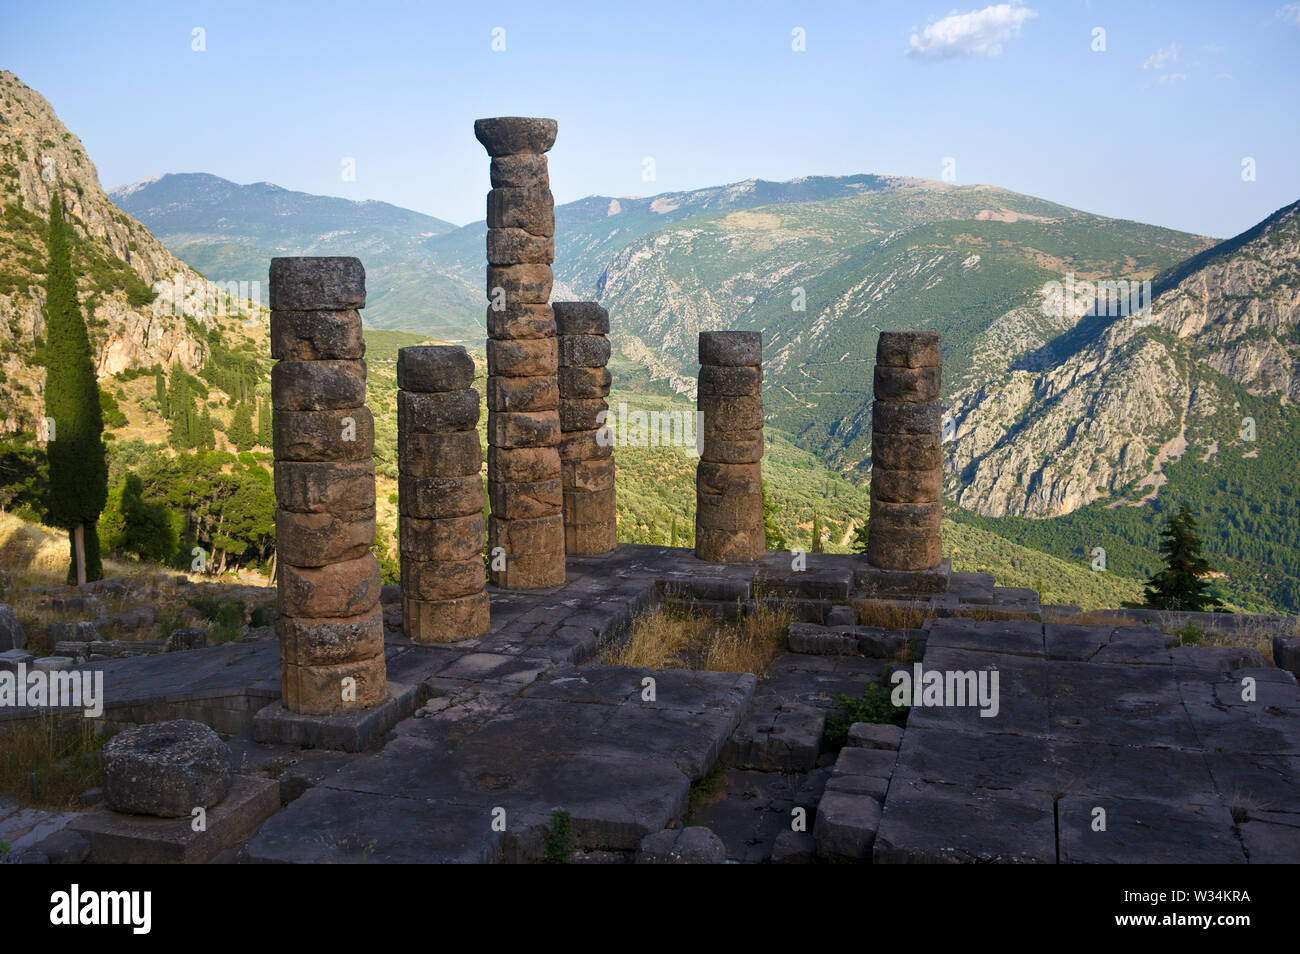 The Temple of Apollo, Delphi, Greece Stock Photo